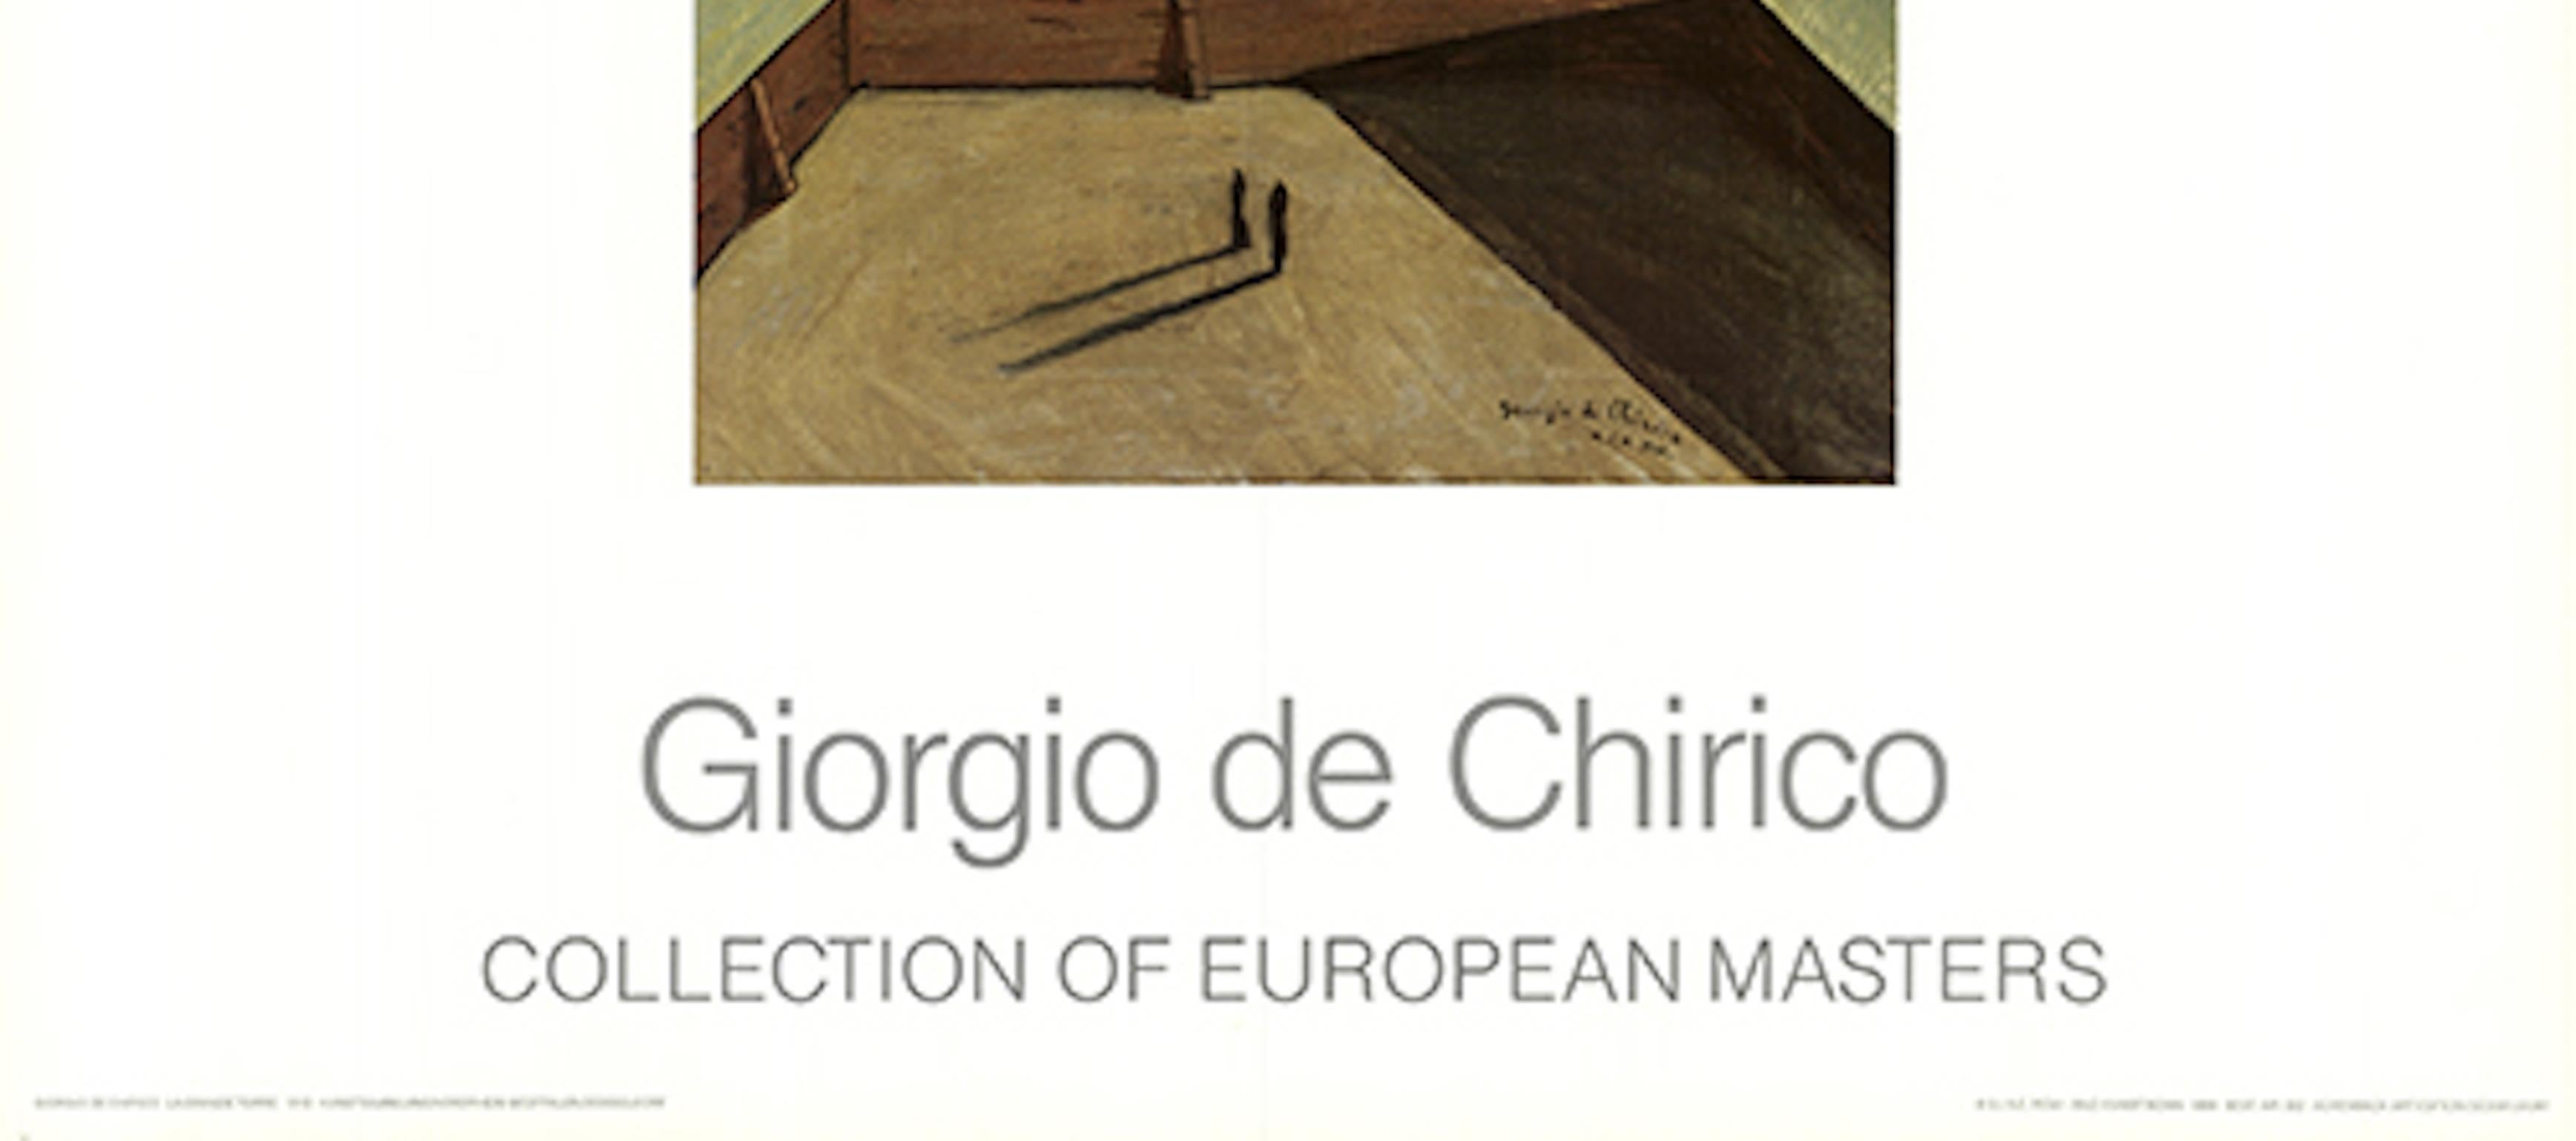 La grande torre - Giorgio De Chirico For Sale 1